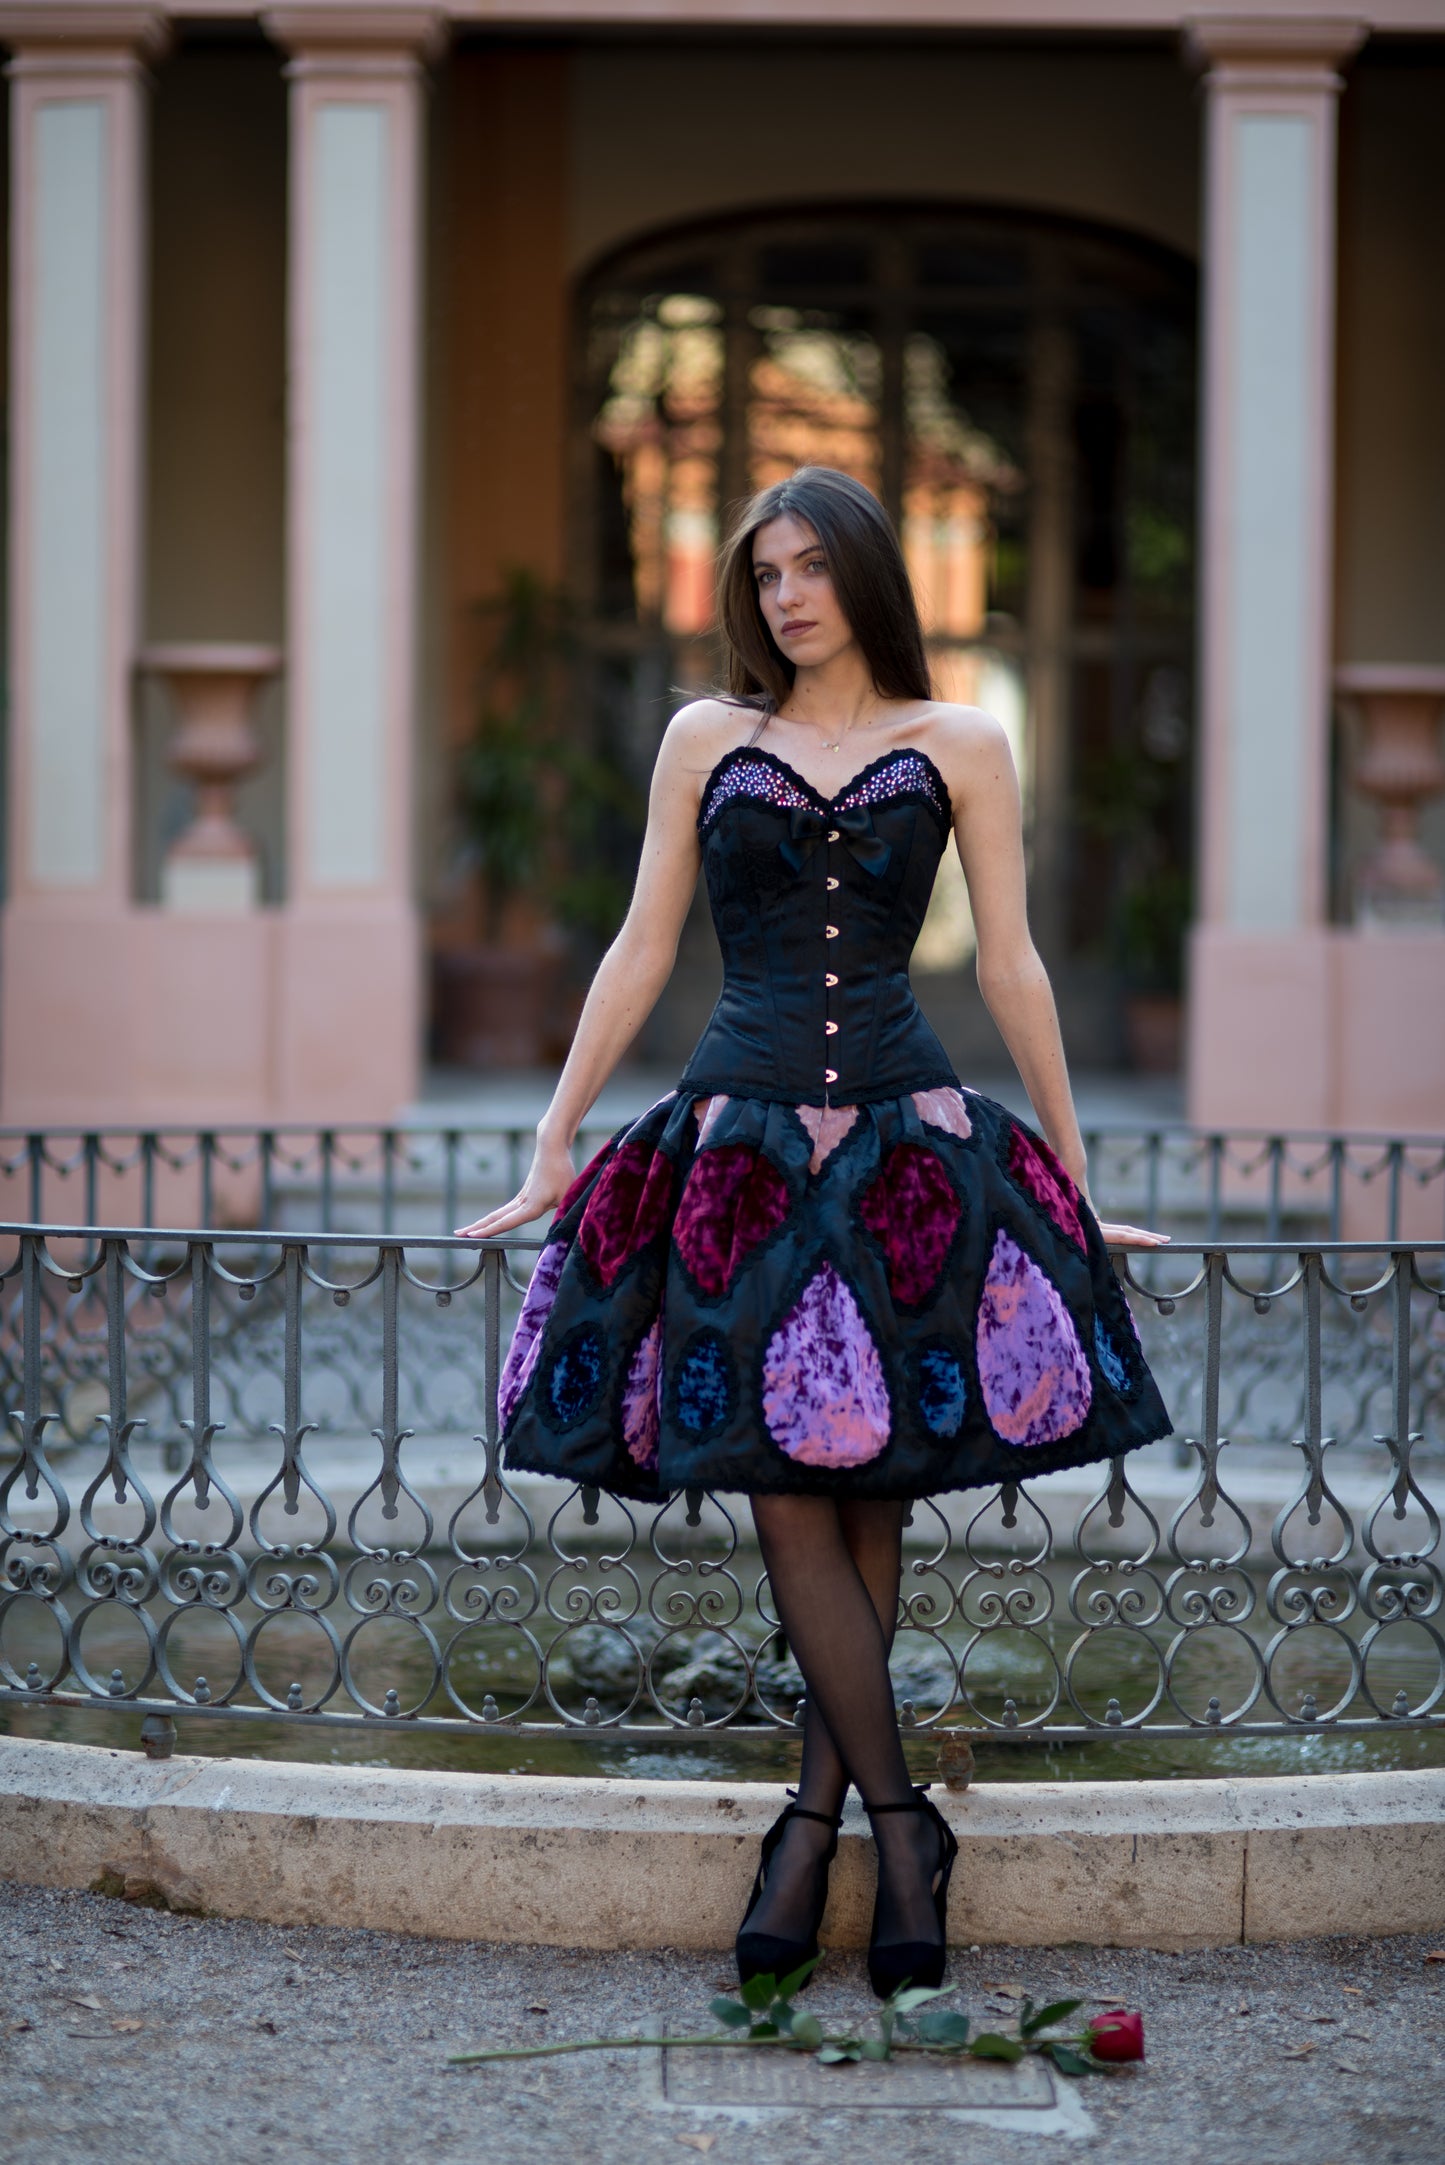 Dark couture dress